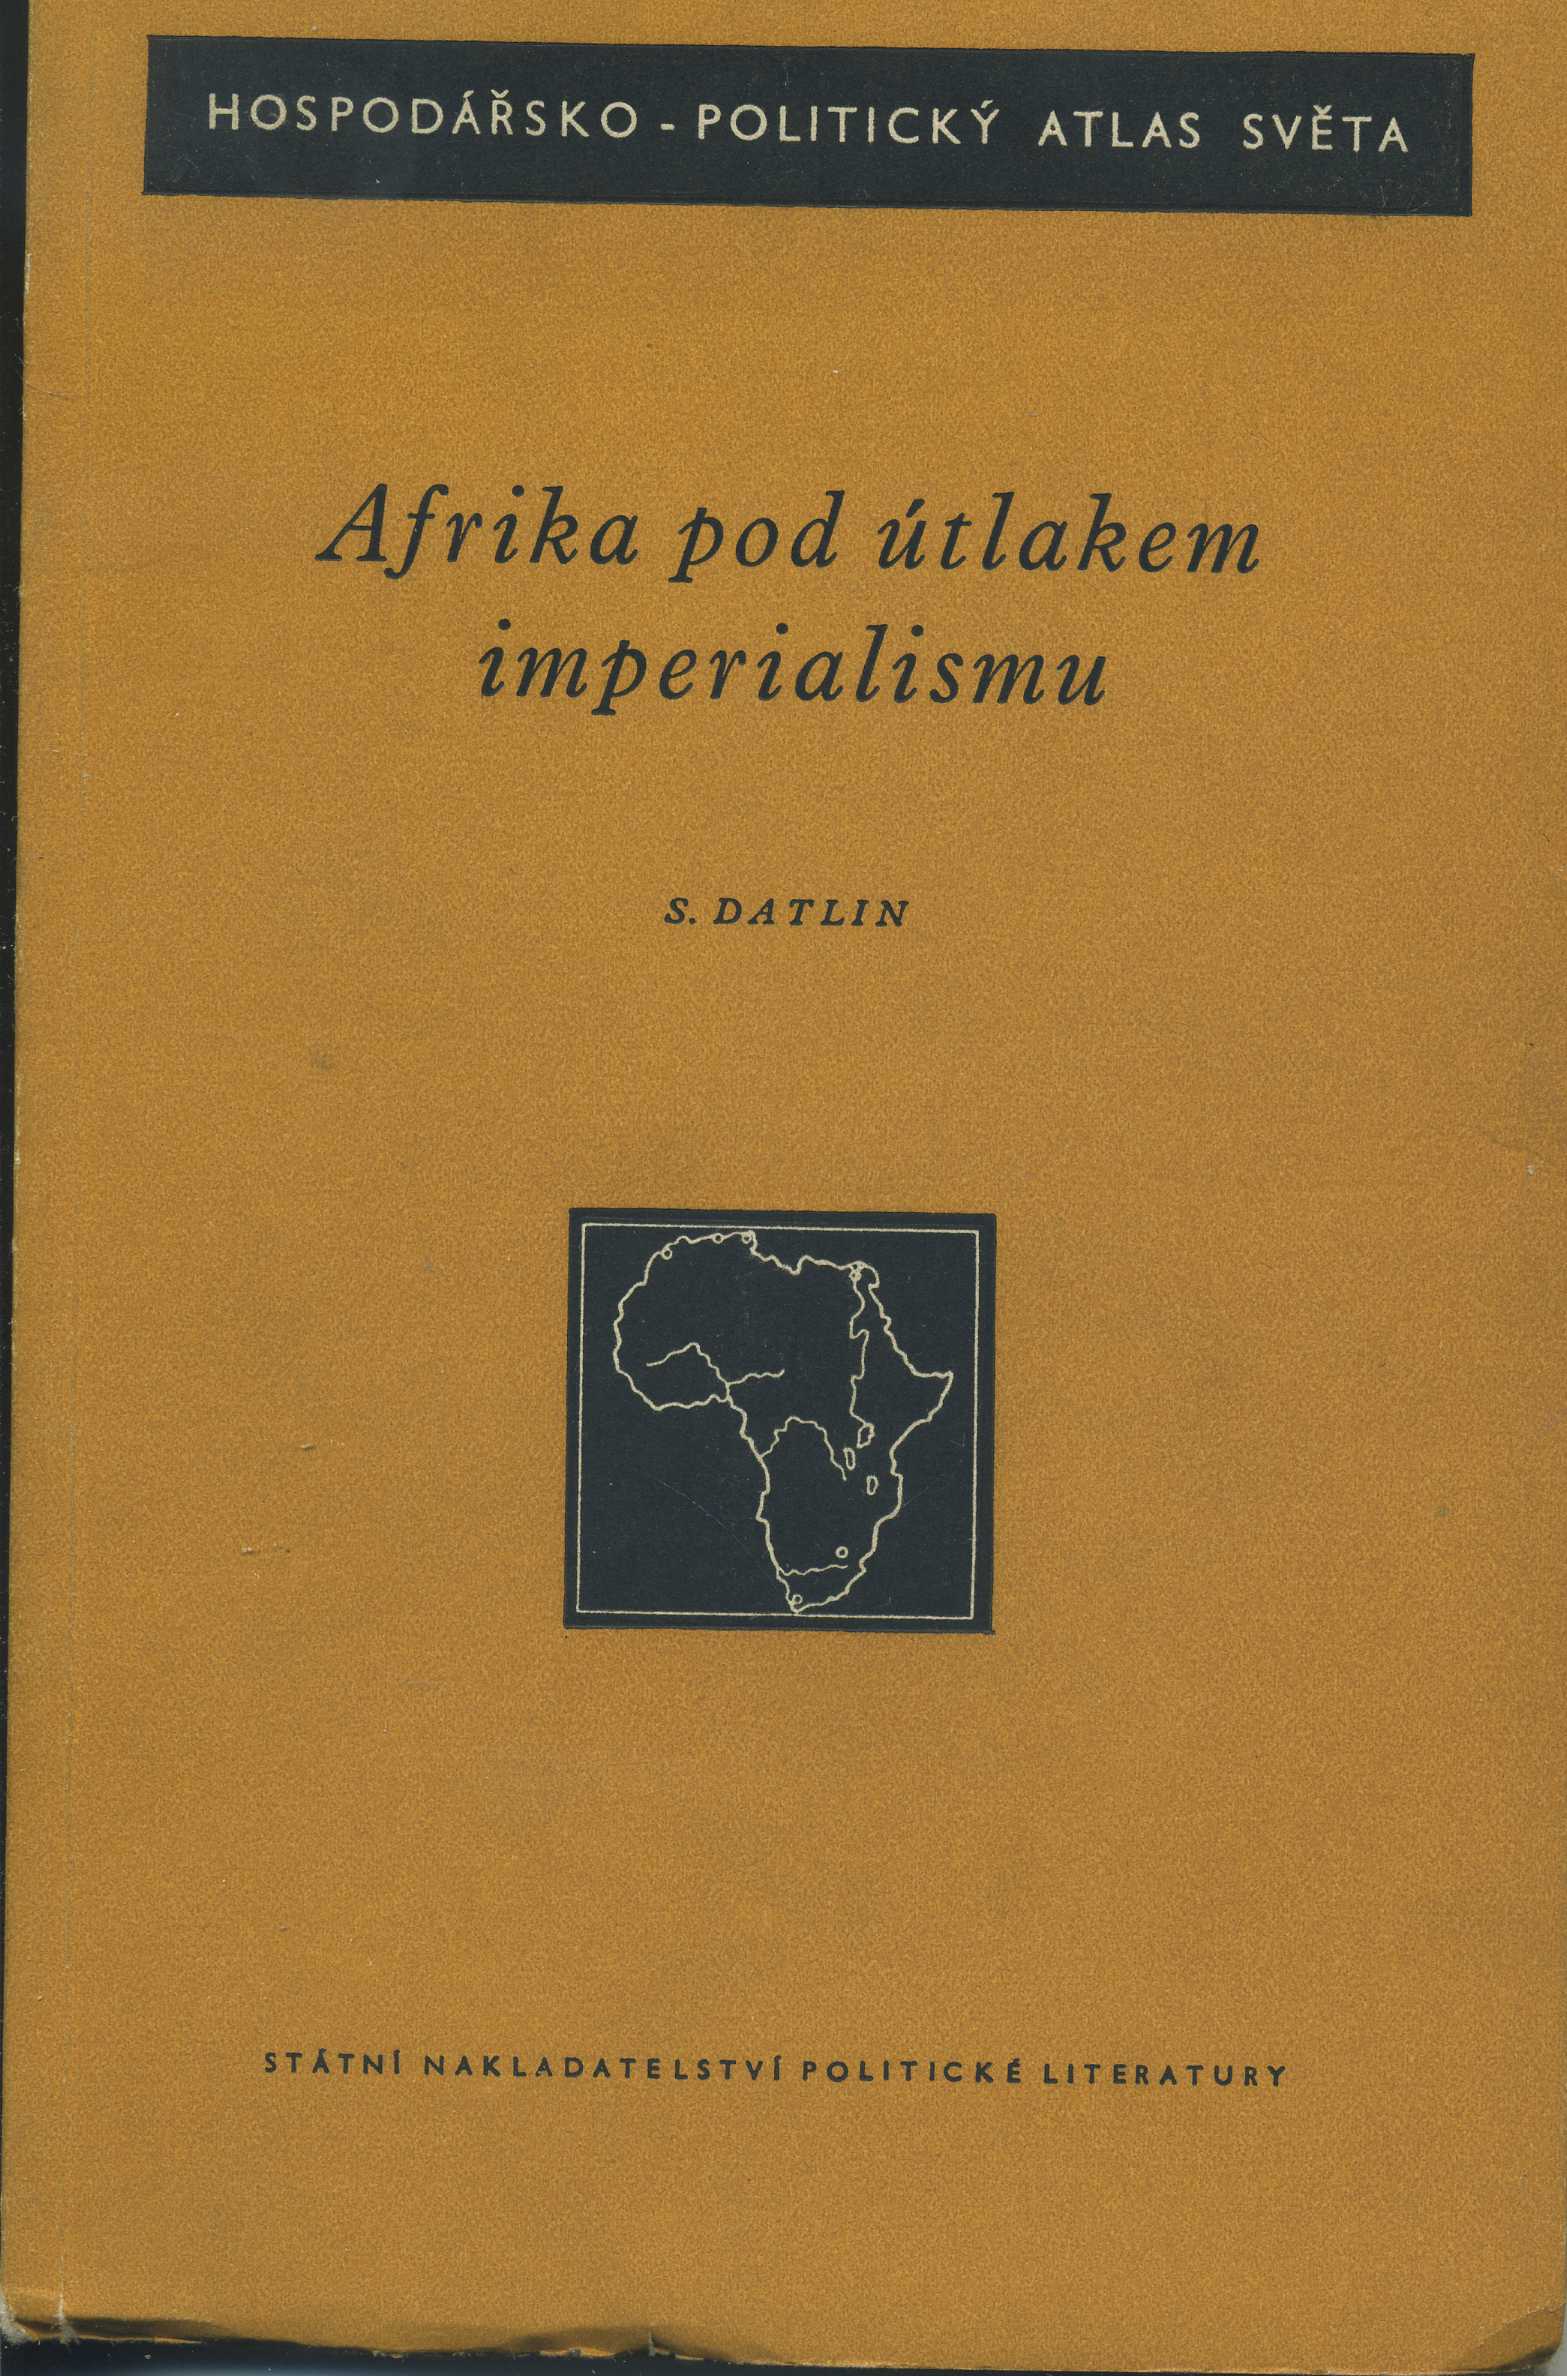 Afrika pod útlakem imperialismu 